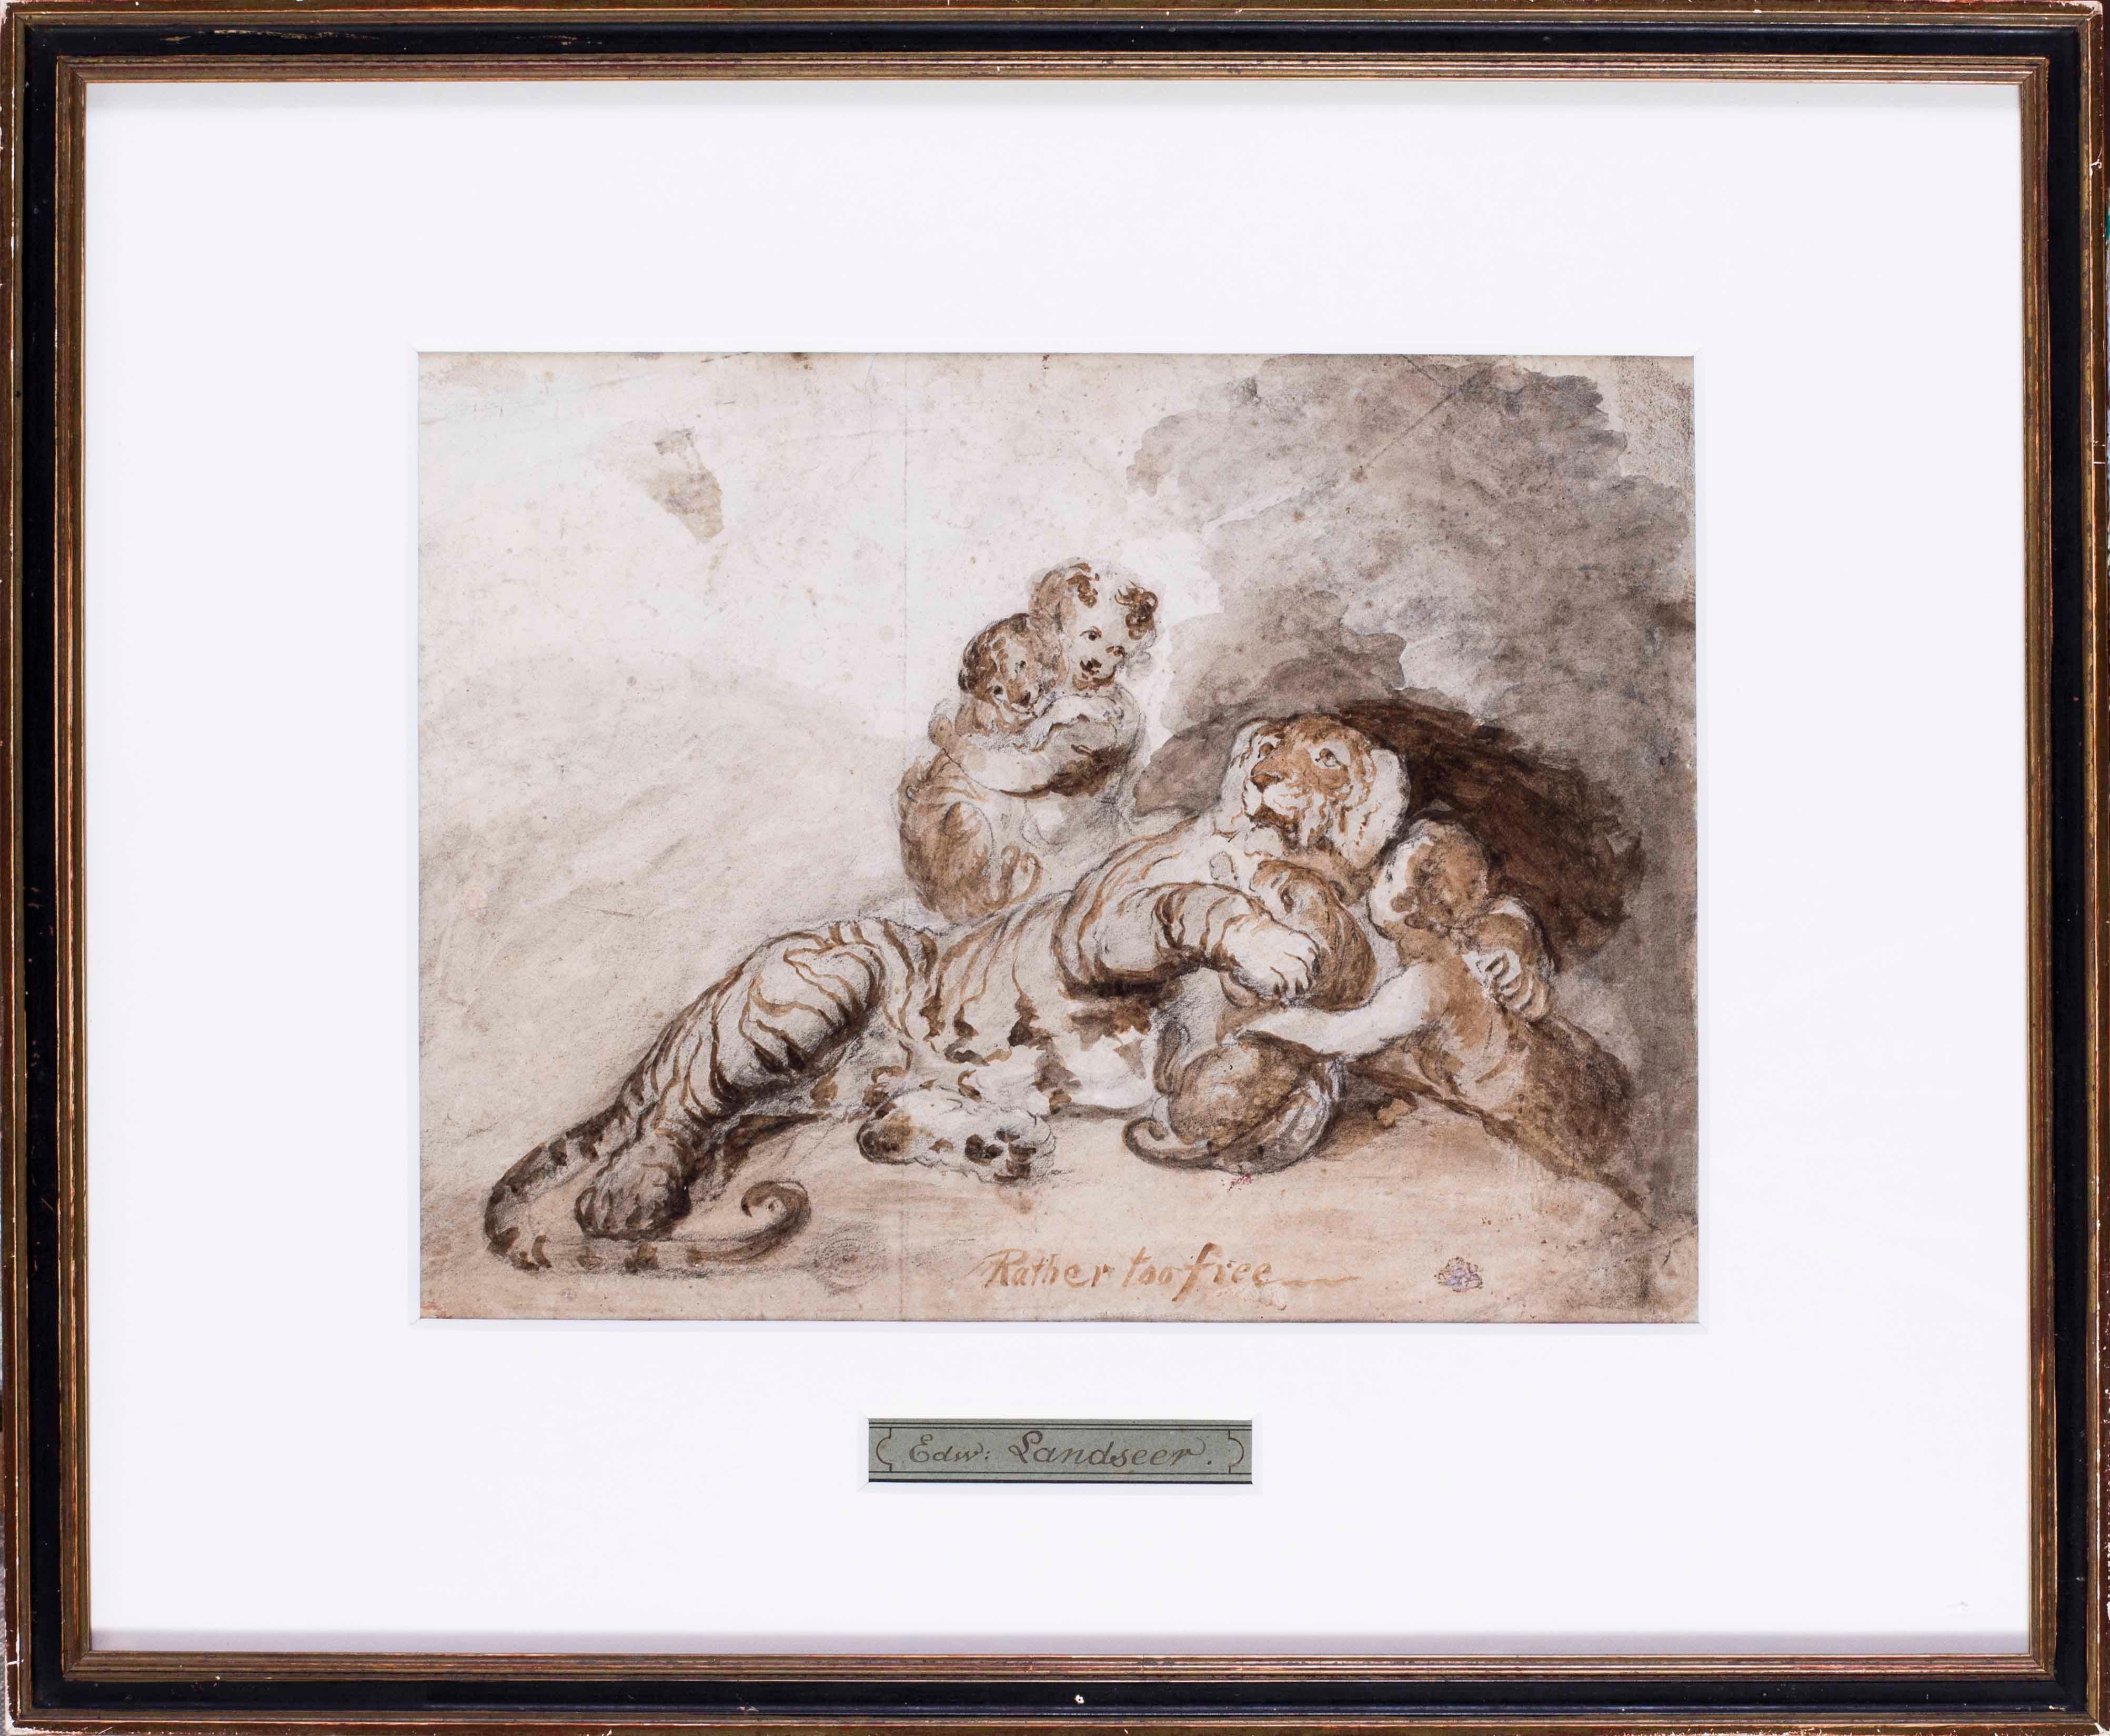 Un dessin britannique du 19ème siècle représentant un tigre, un peigne et un enfant attribué à Landseer